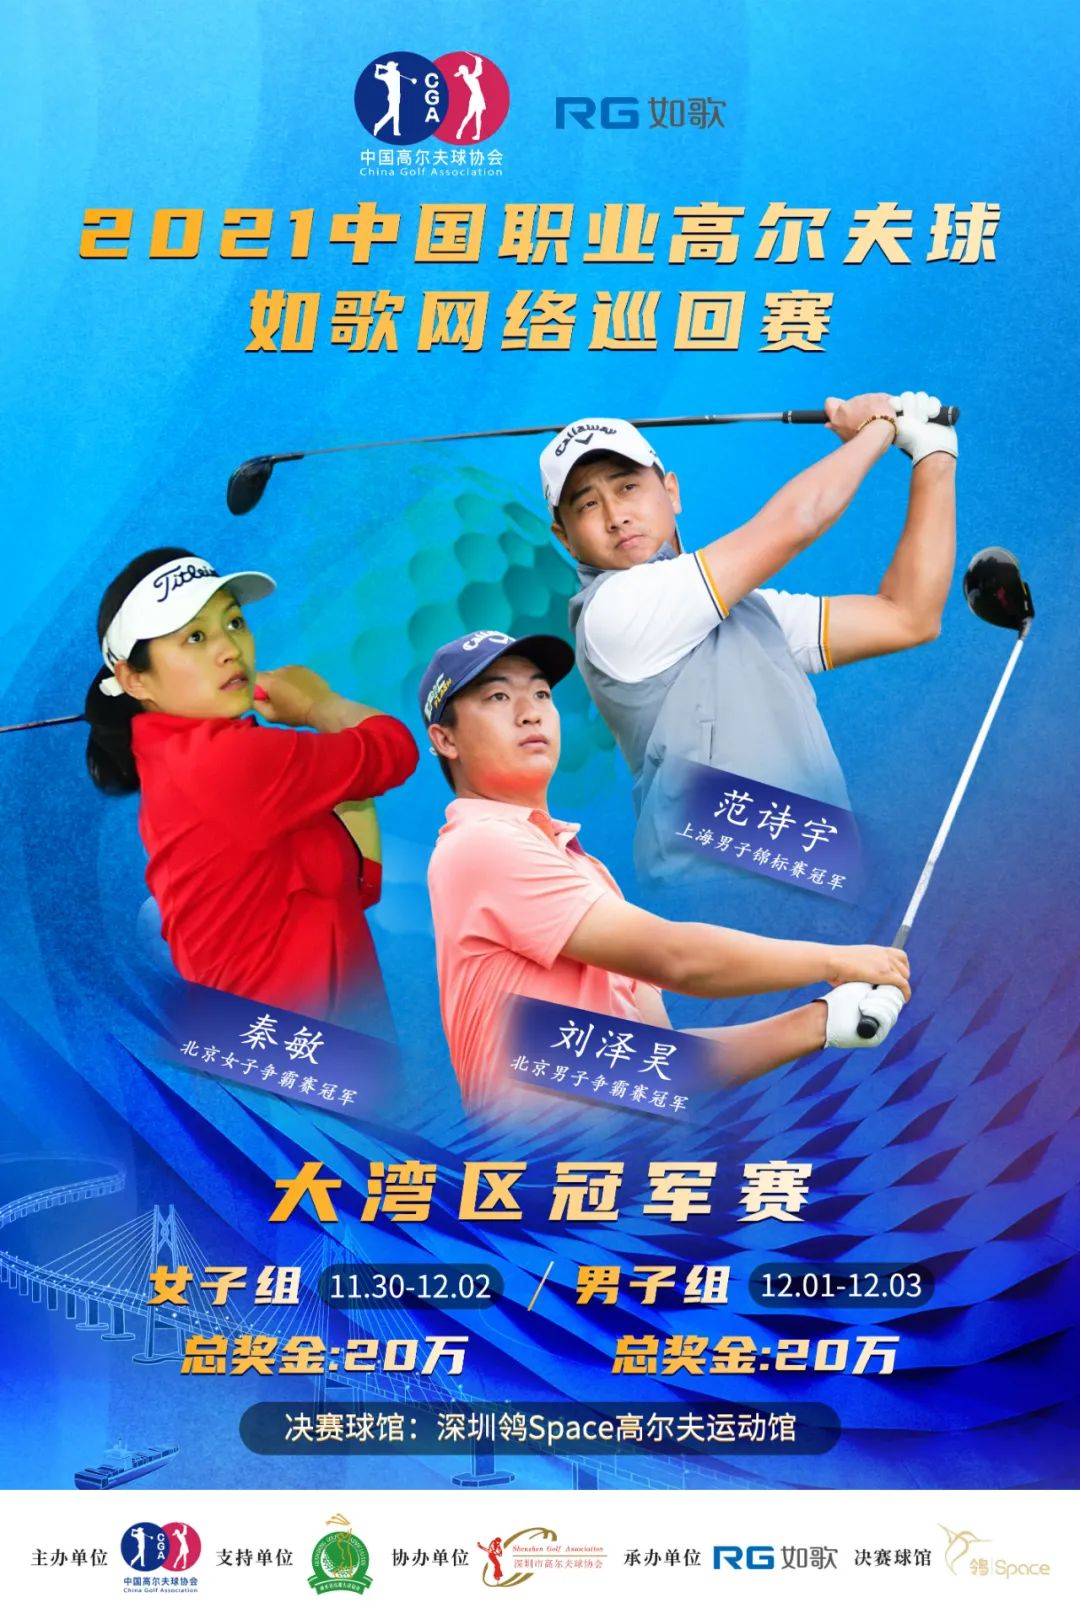 2021中国职业高尔夫球-如歌网络巡回赛.png